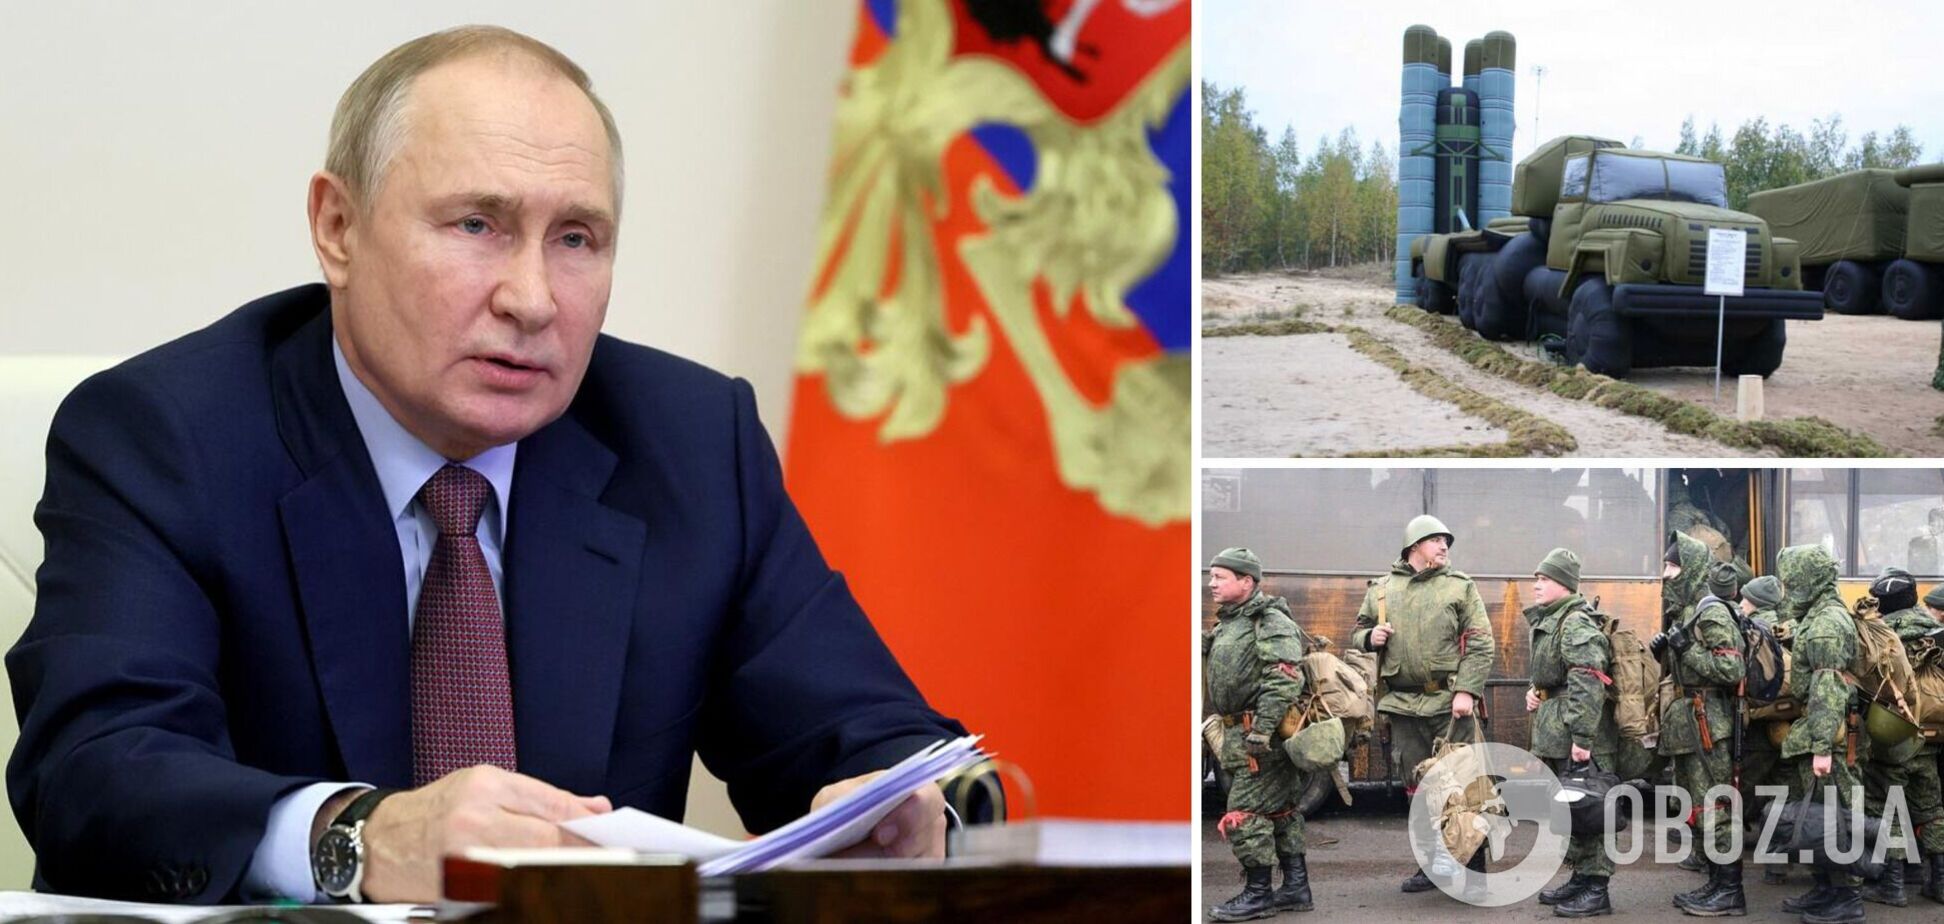 'Мы пощелкаем и Patriot': Путин заявил, что хочет закончить войну в Украине, но его обманывают с мирными переговорами. Видео